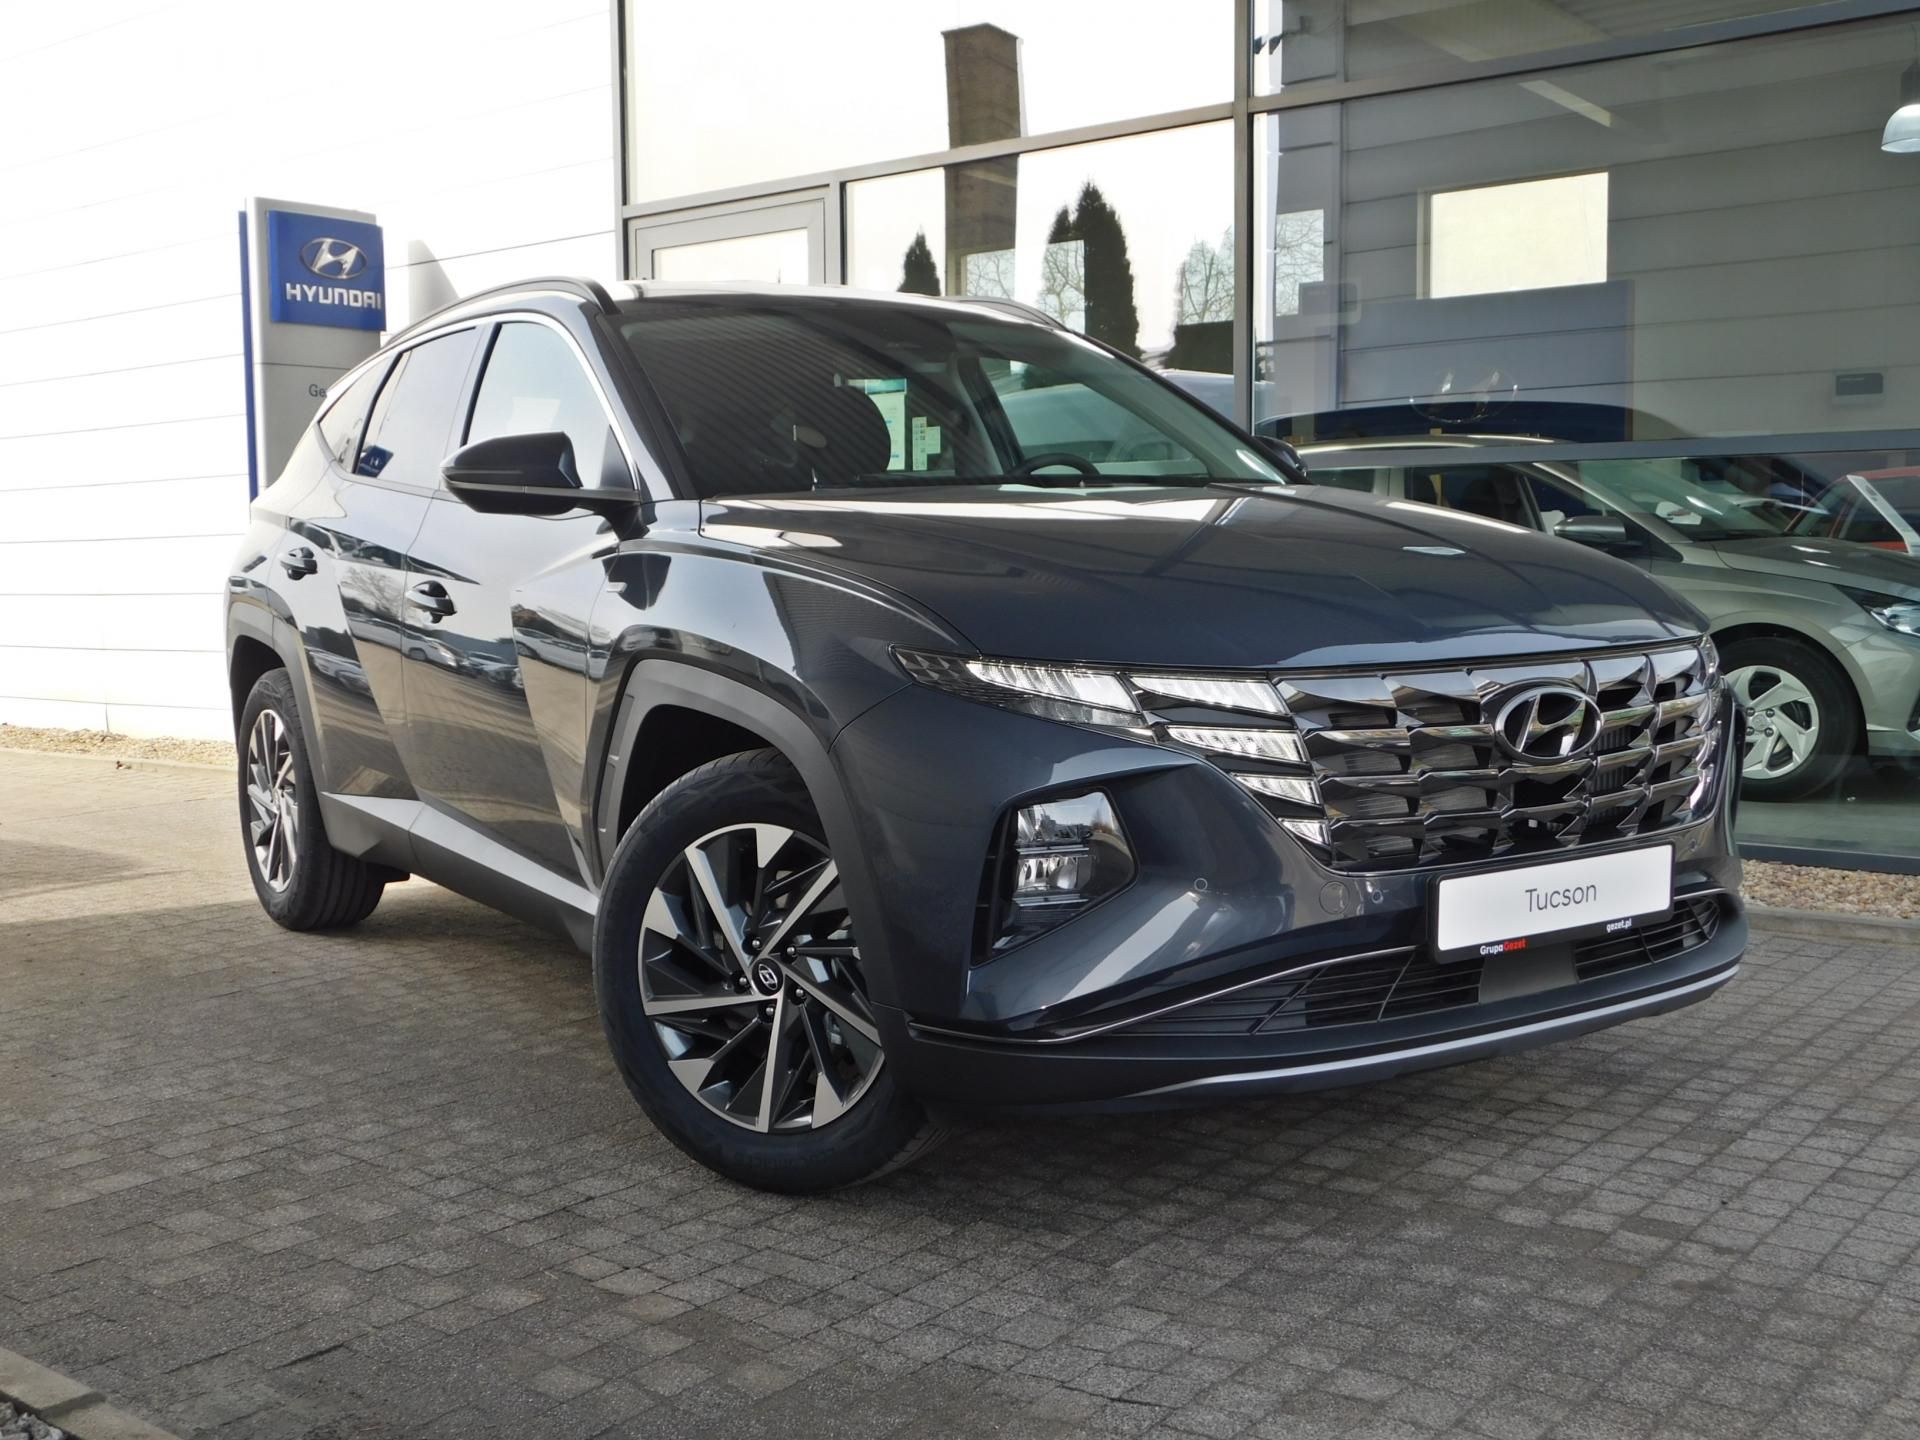 Hyundai Tucson Nowej Generacji 2021 1.6 TGDI benzyna150KM